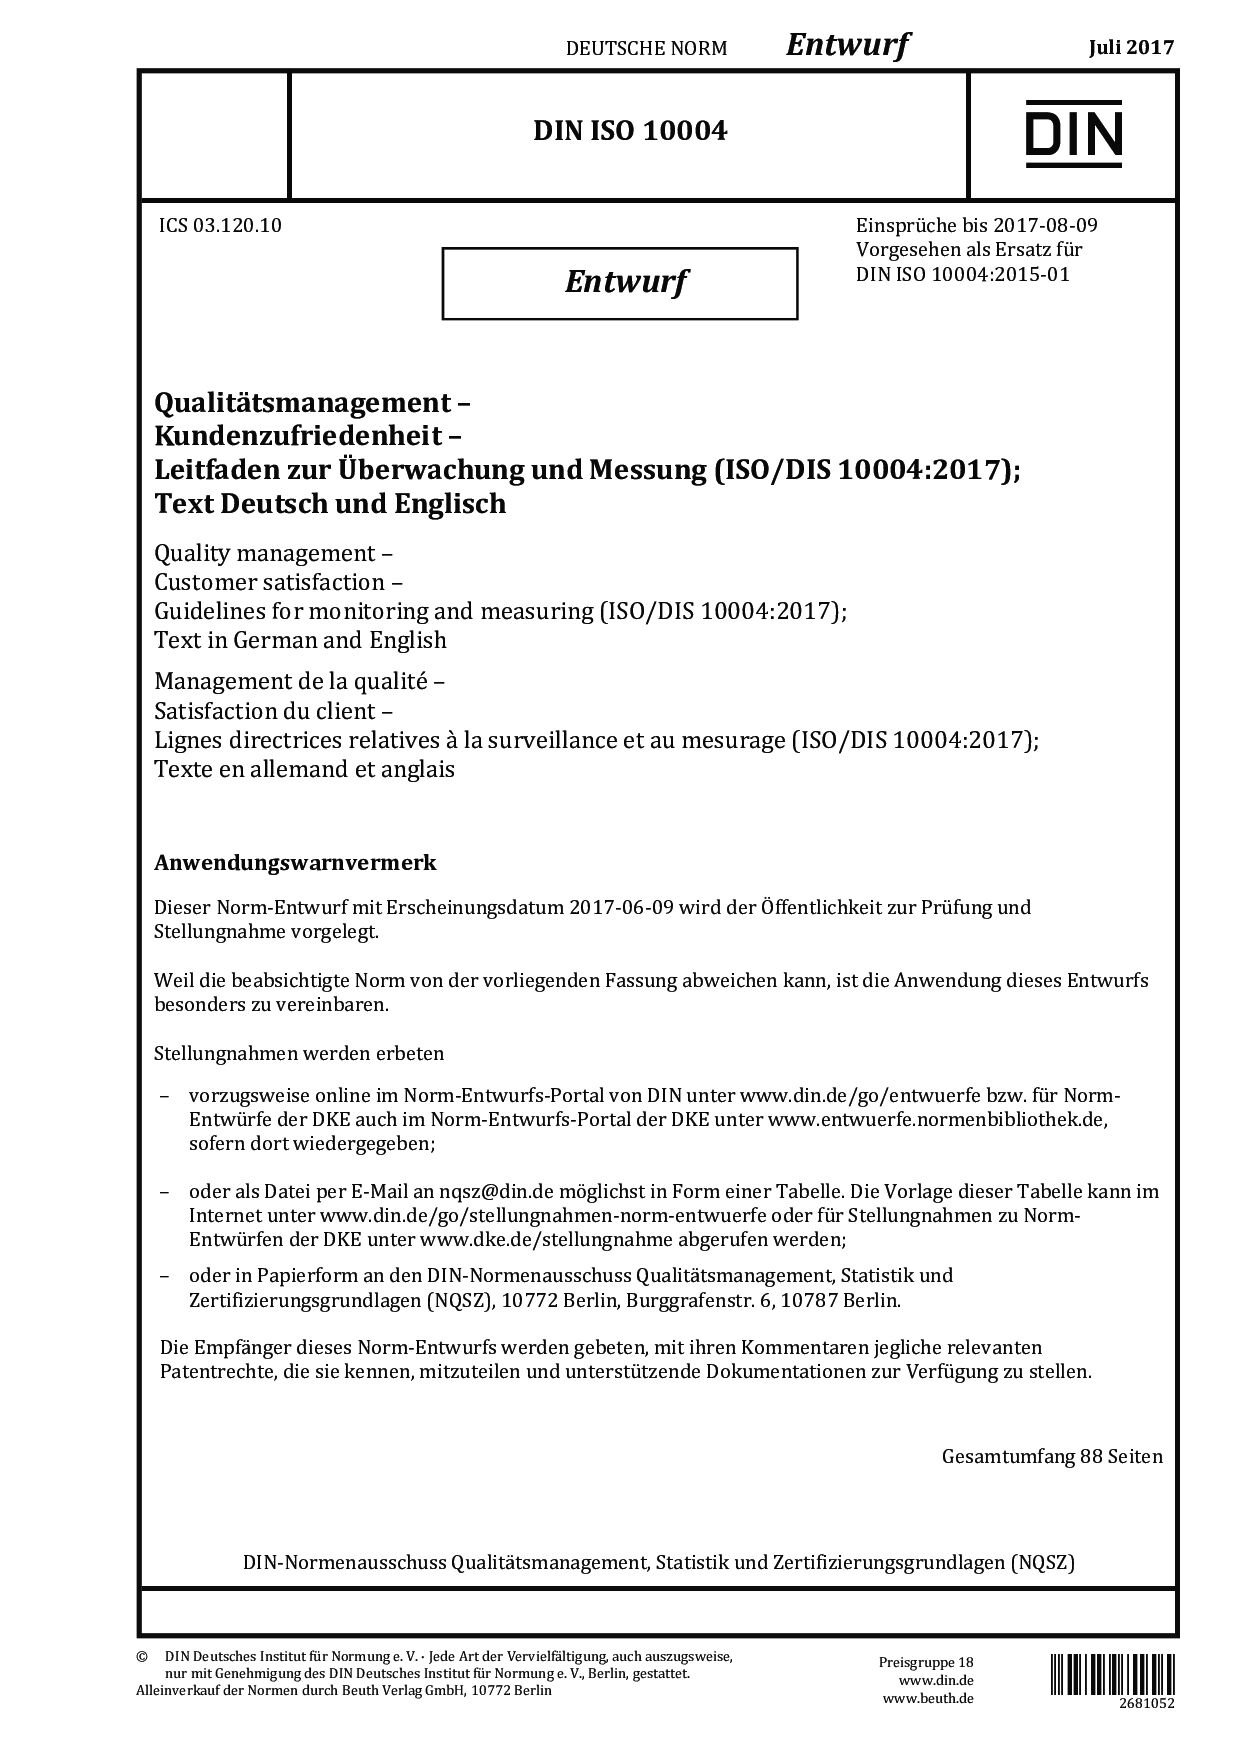 DIN ISO 10004 E:2017-07